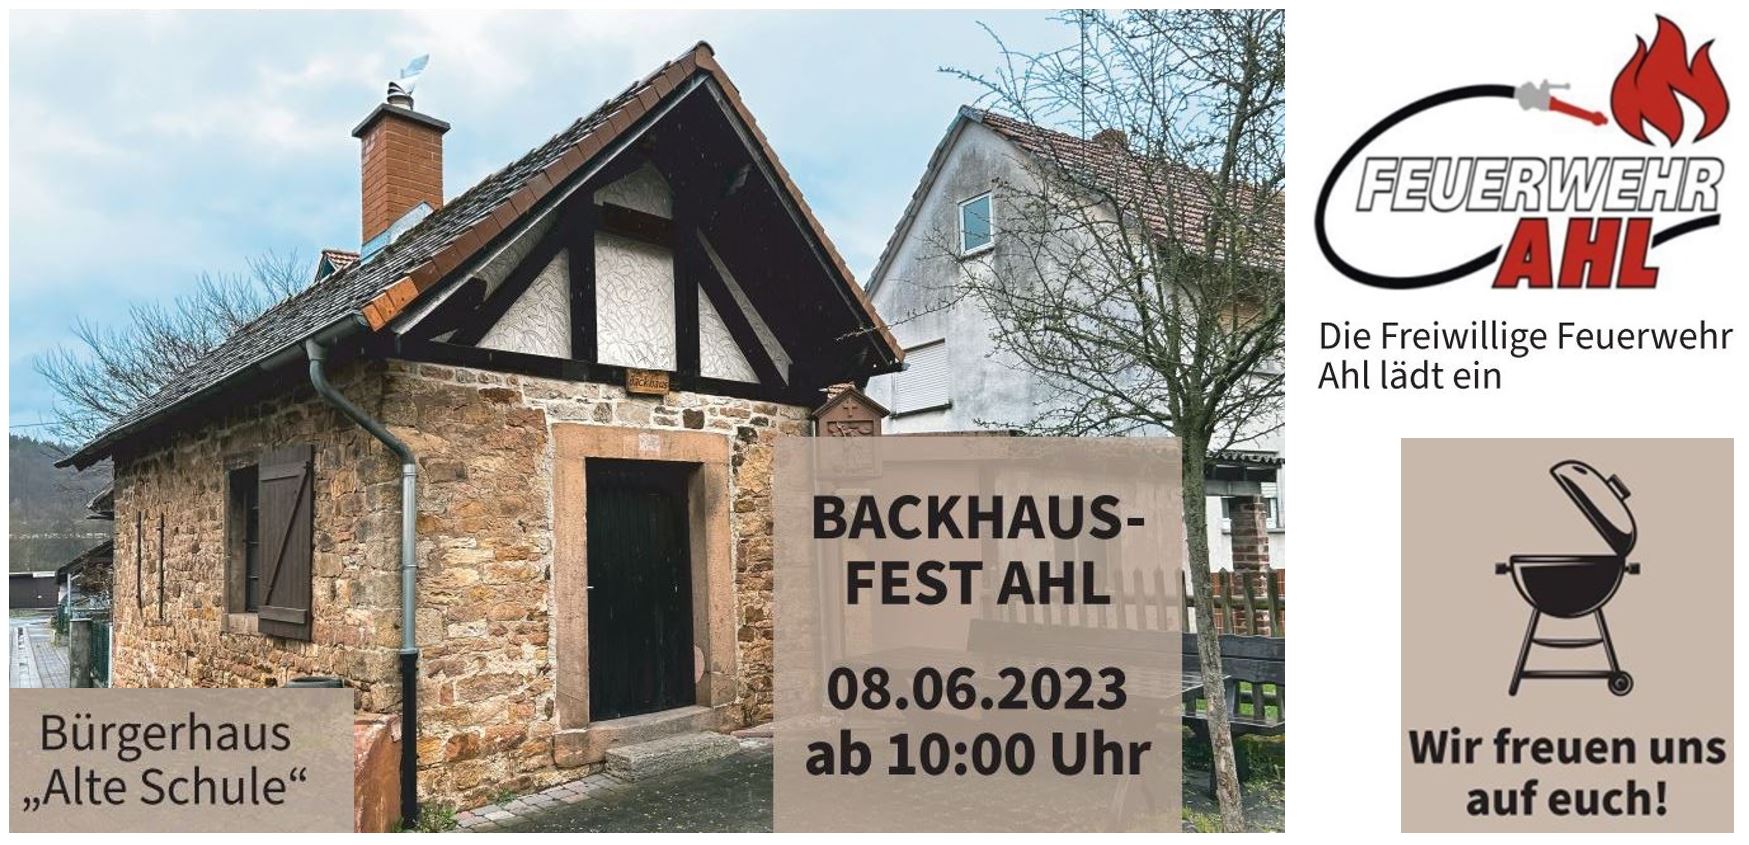 FF Ahl Backhausfest 2023 002